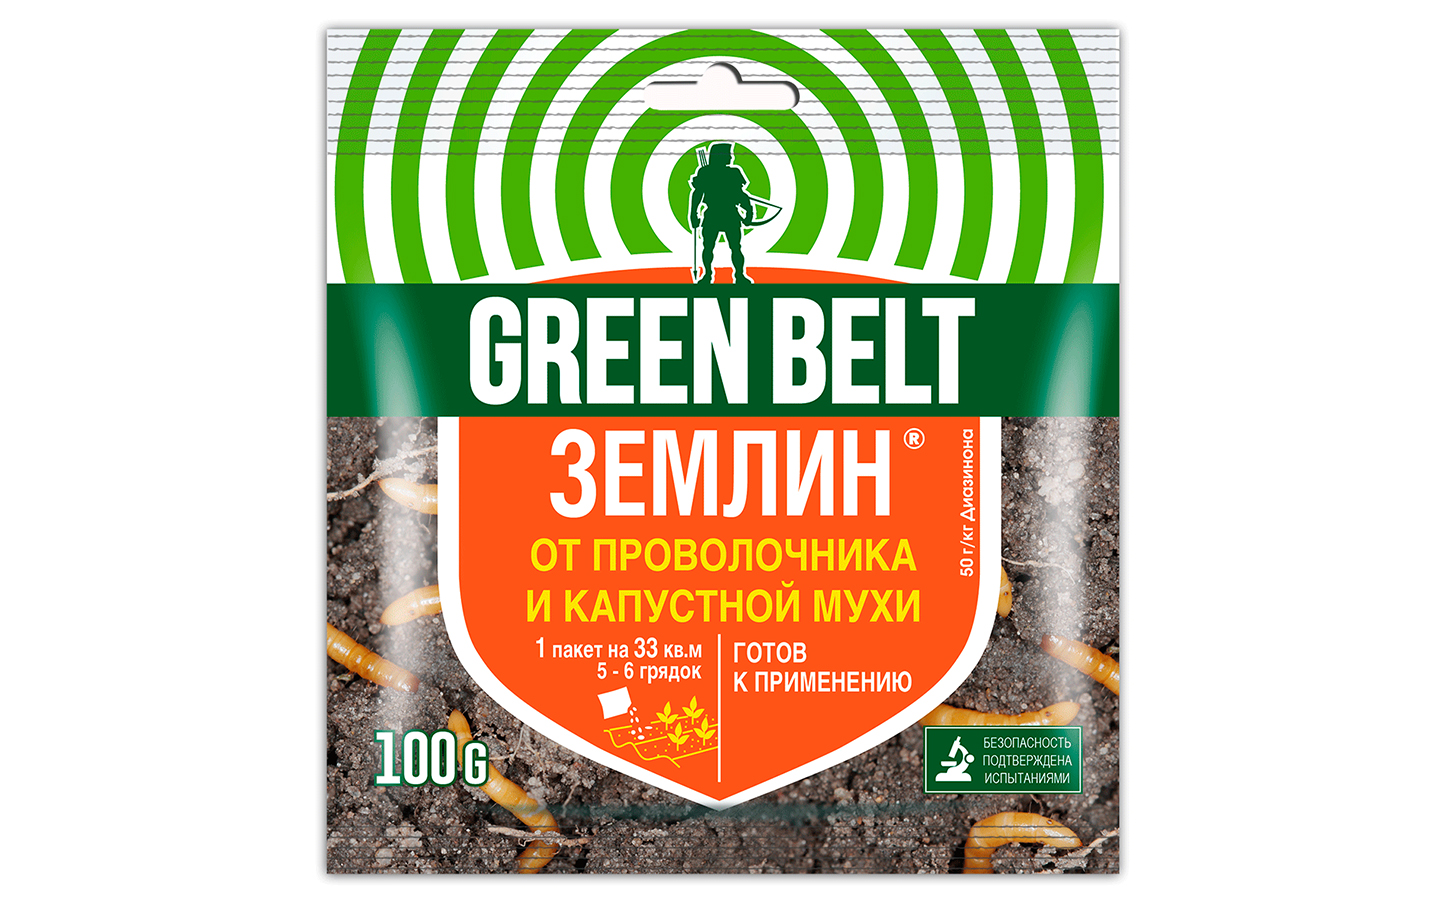 GREEN BELT Землин, пакет 100 гр, 01-205